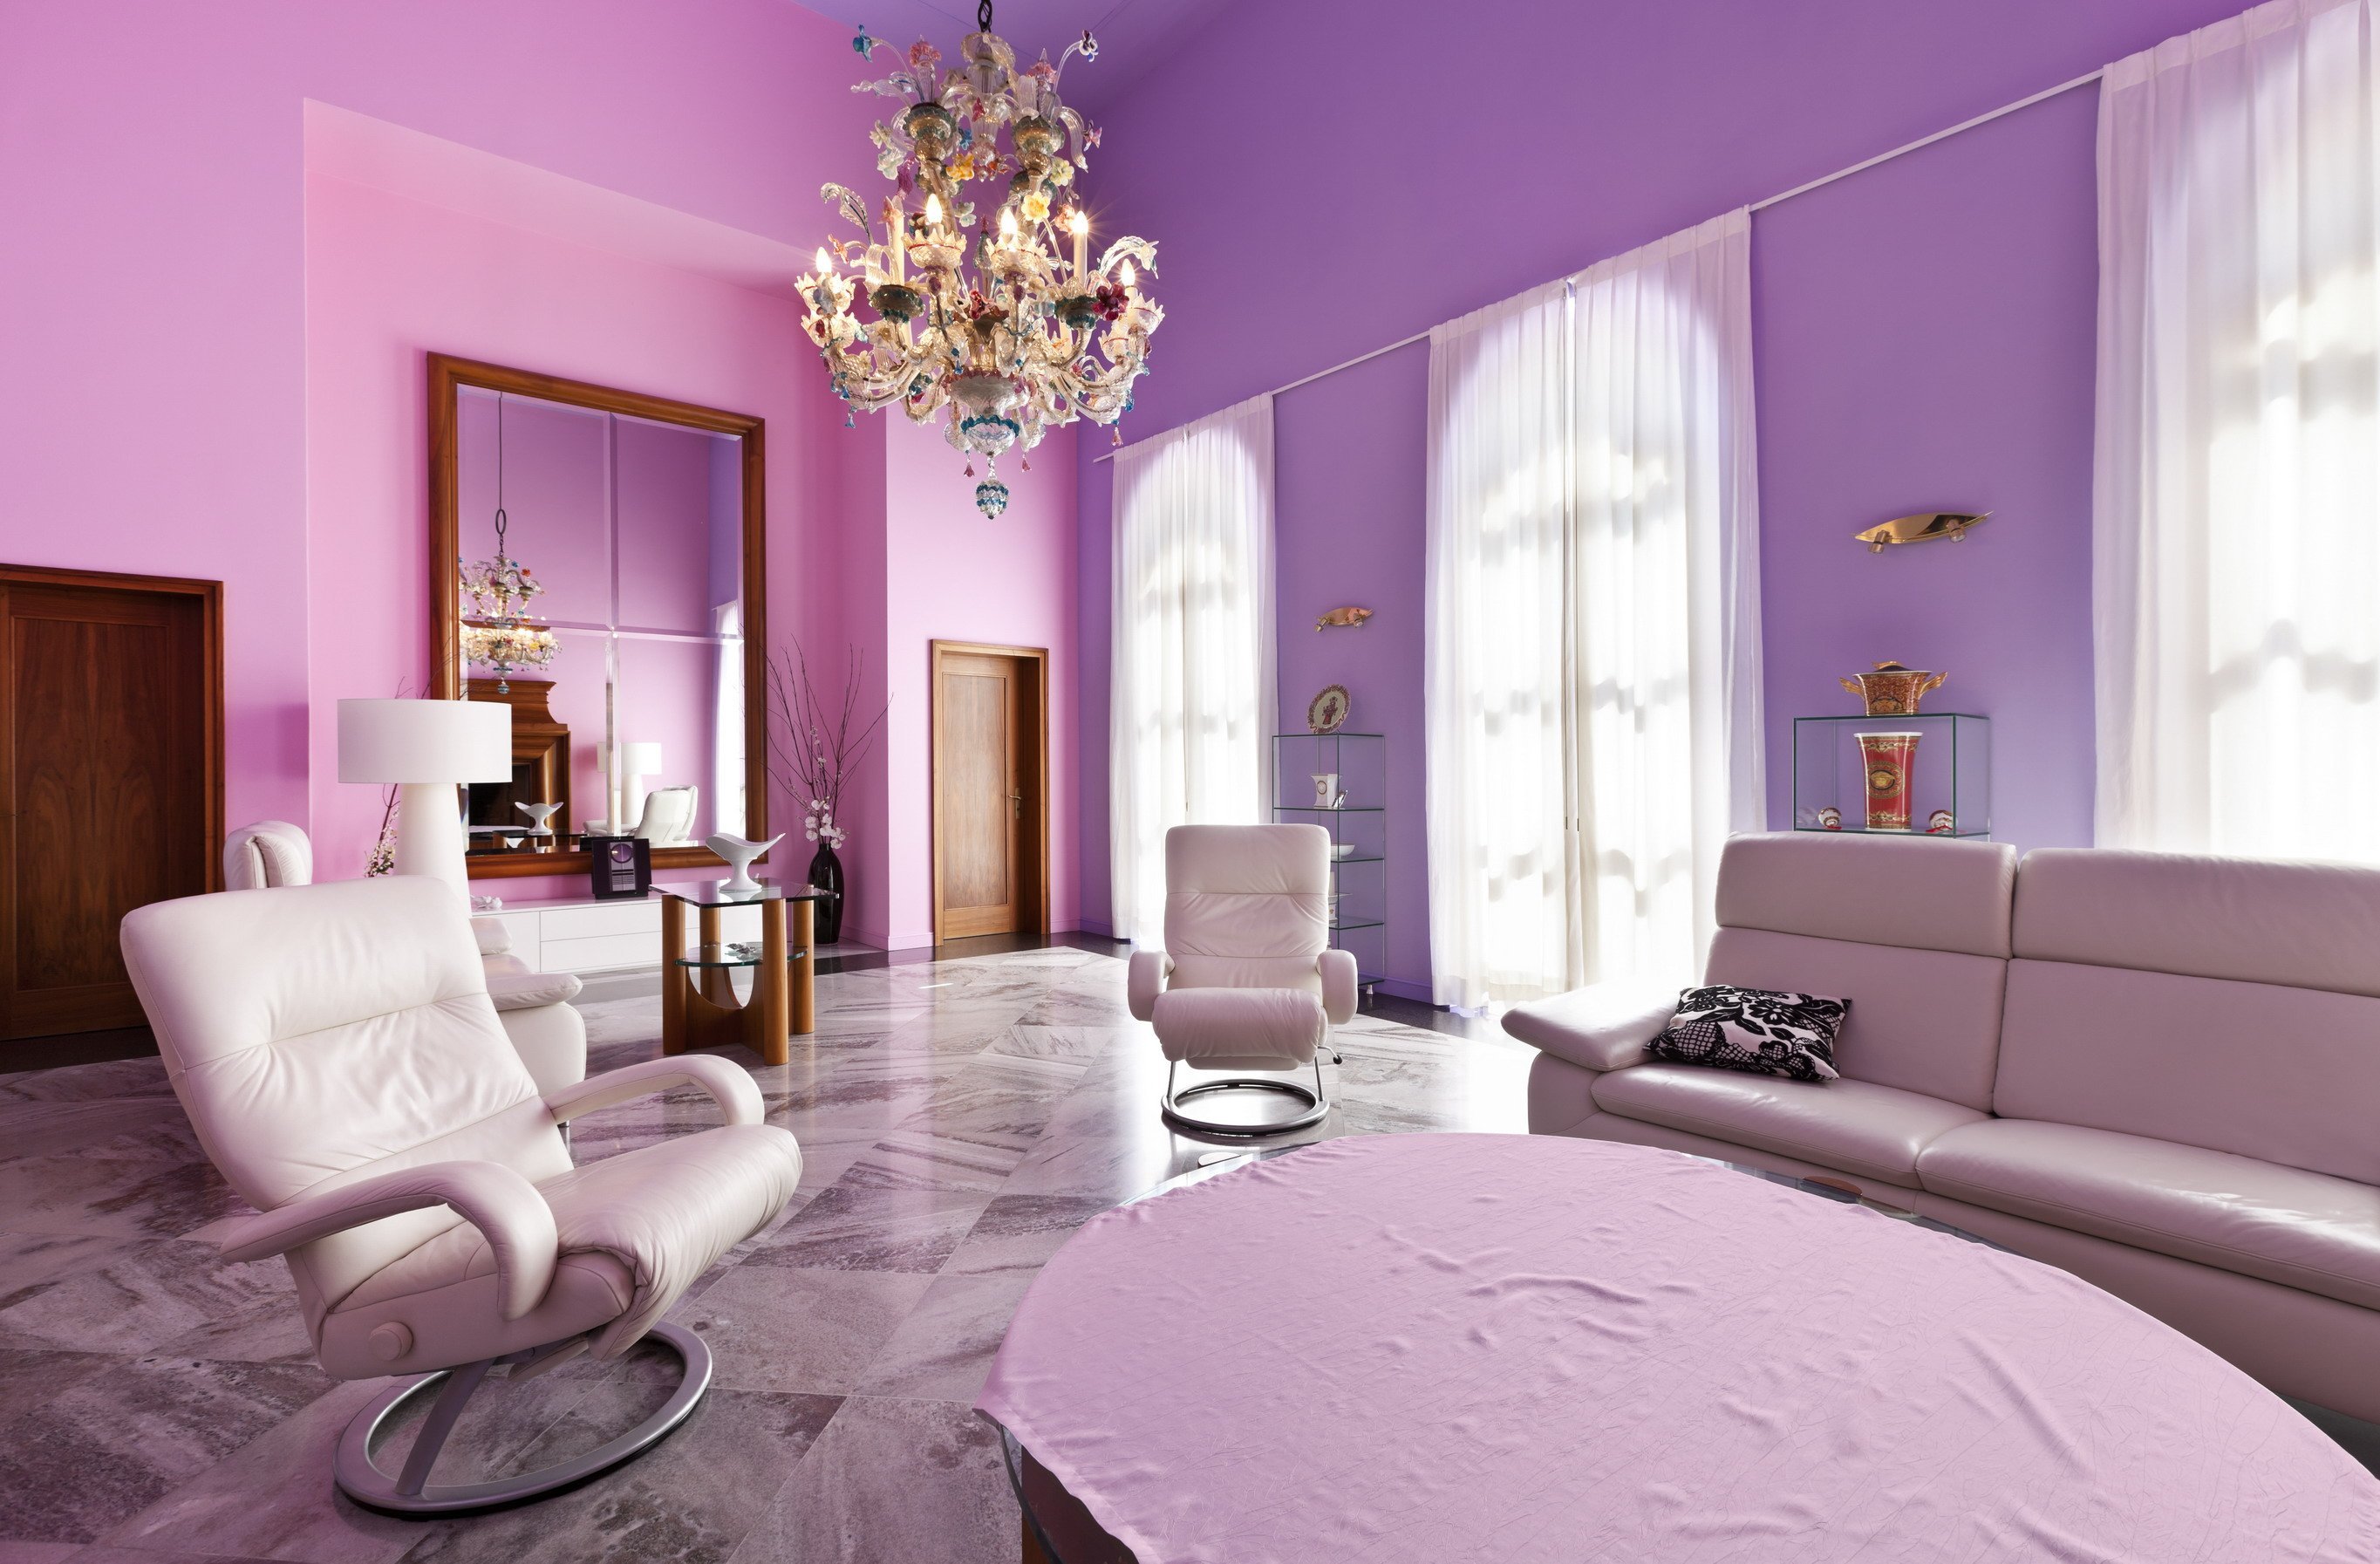 Фиолетовый диван: к чему подойдет и с чем его можно сочетать?